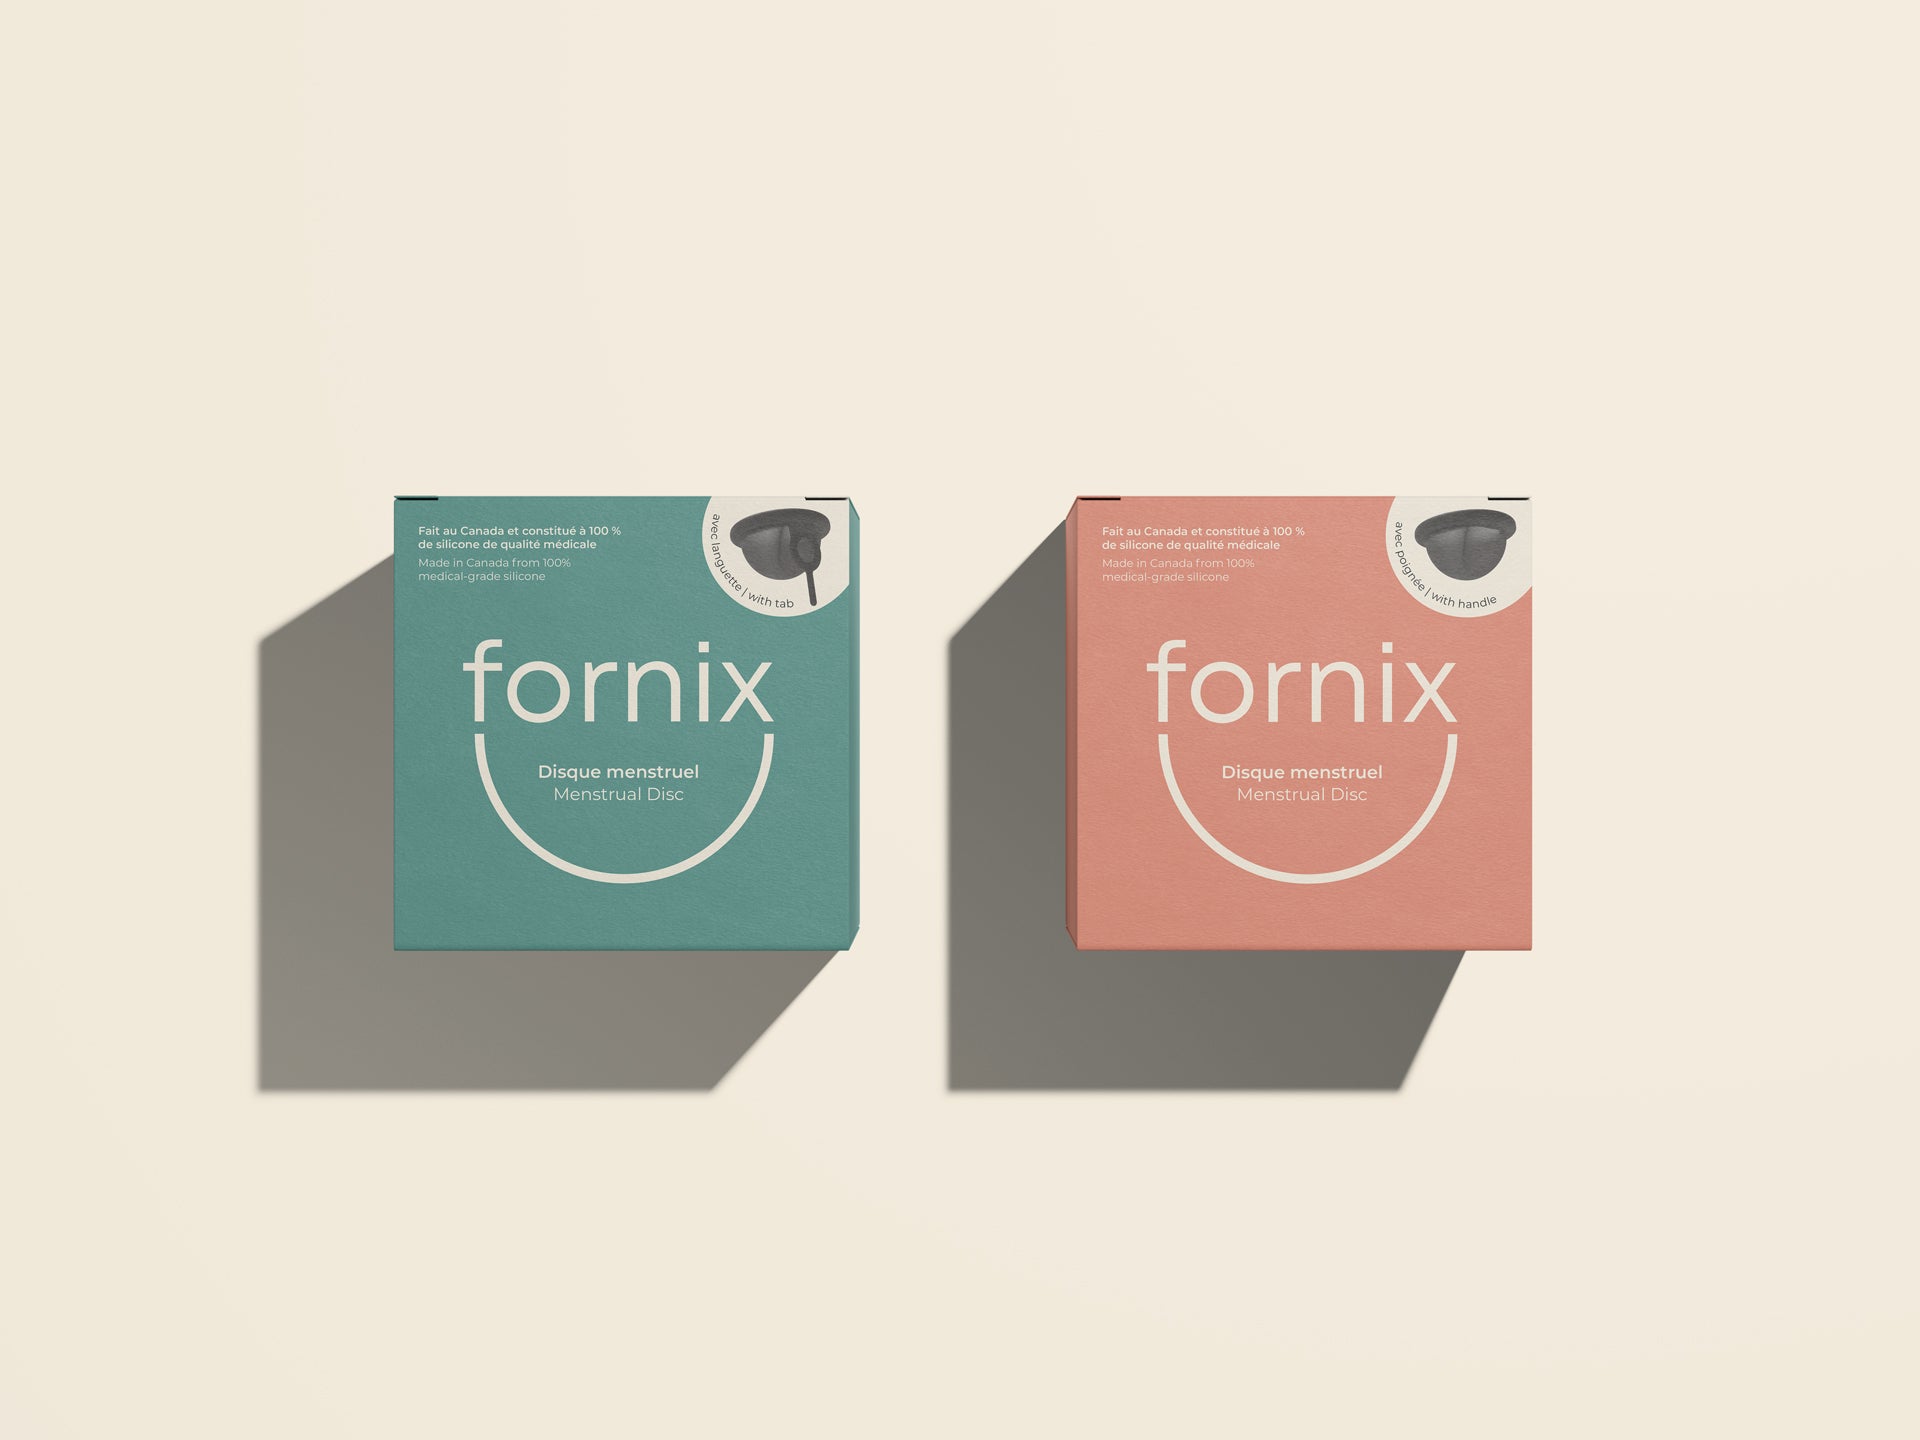 Disque menstruel Fornix avec poignée et disque menstruel Fornix avec languette 
Fornix Menstrual Disc With Handle and Fornix Menstrual Disc With Tab